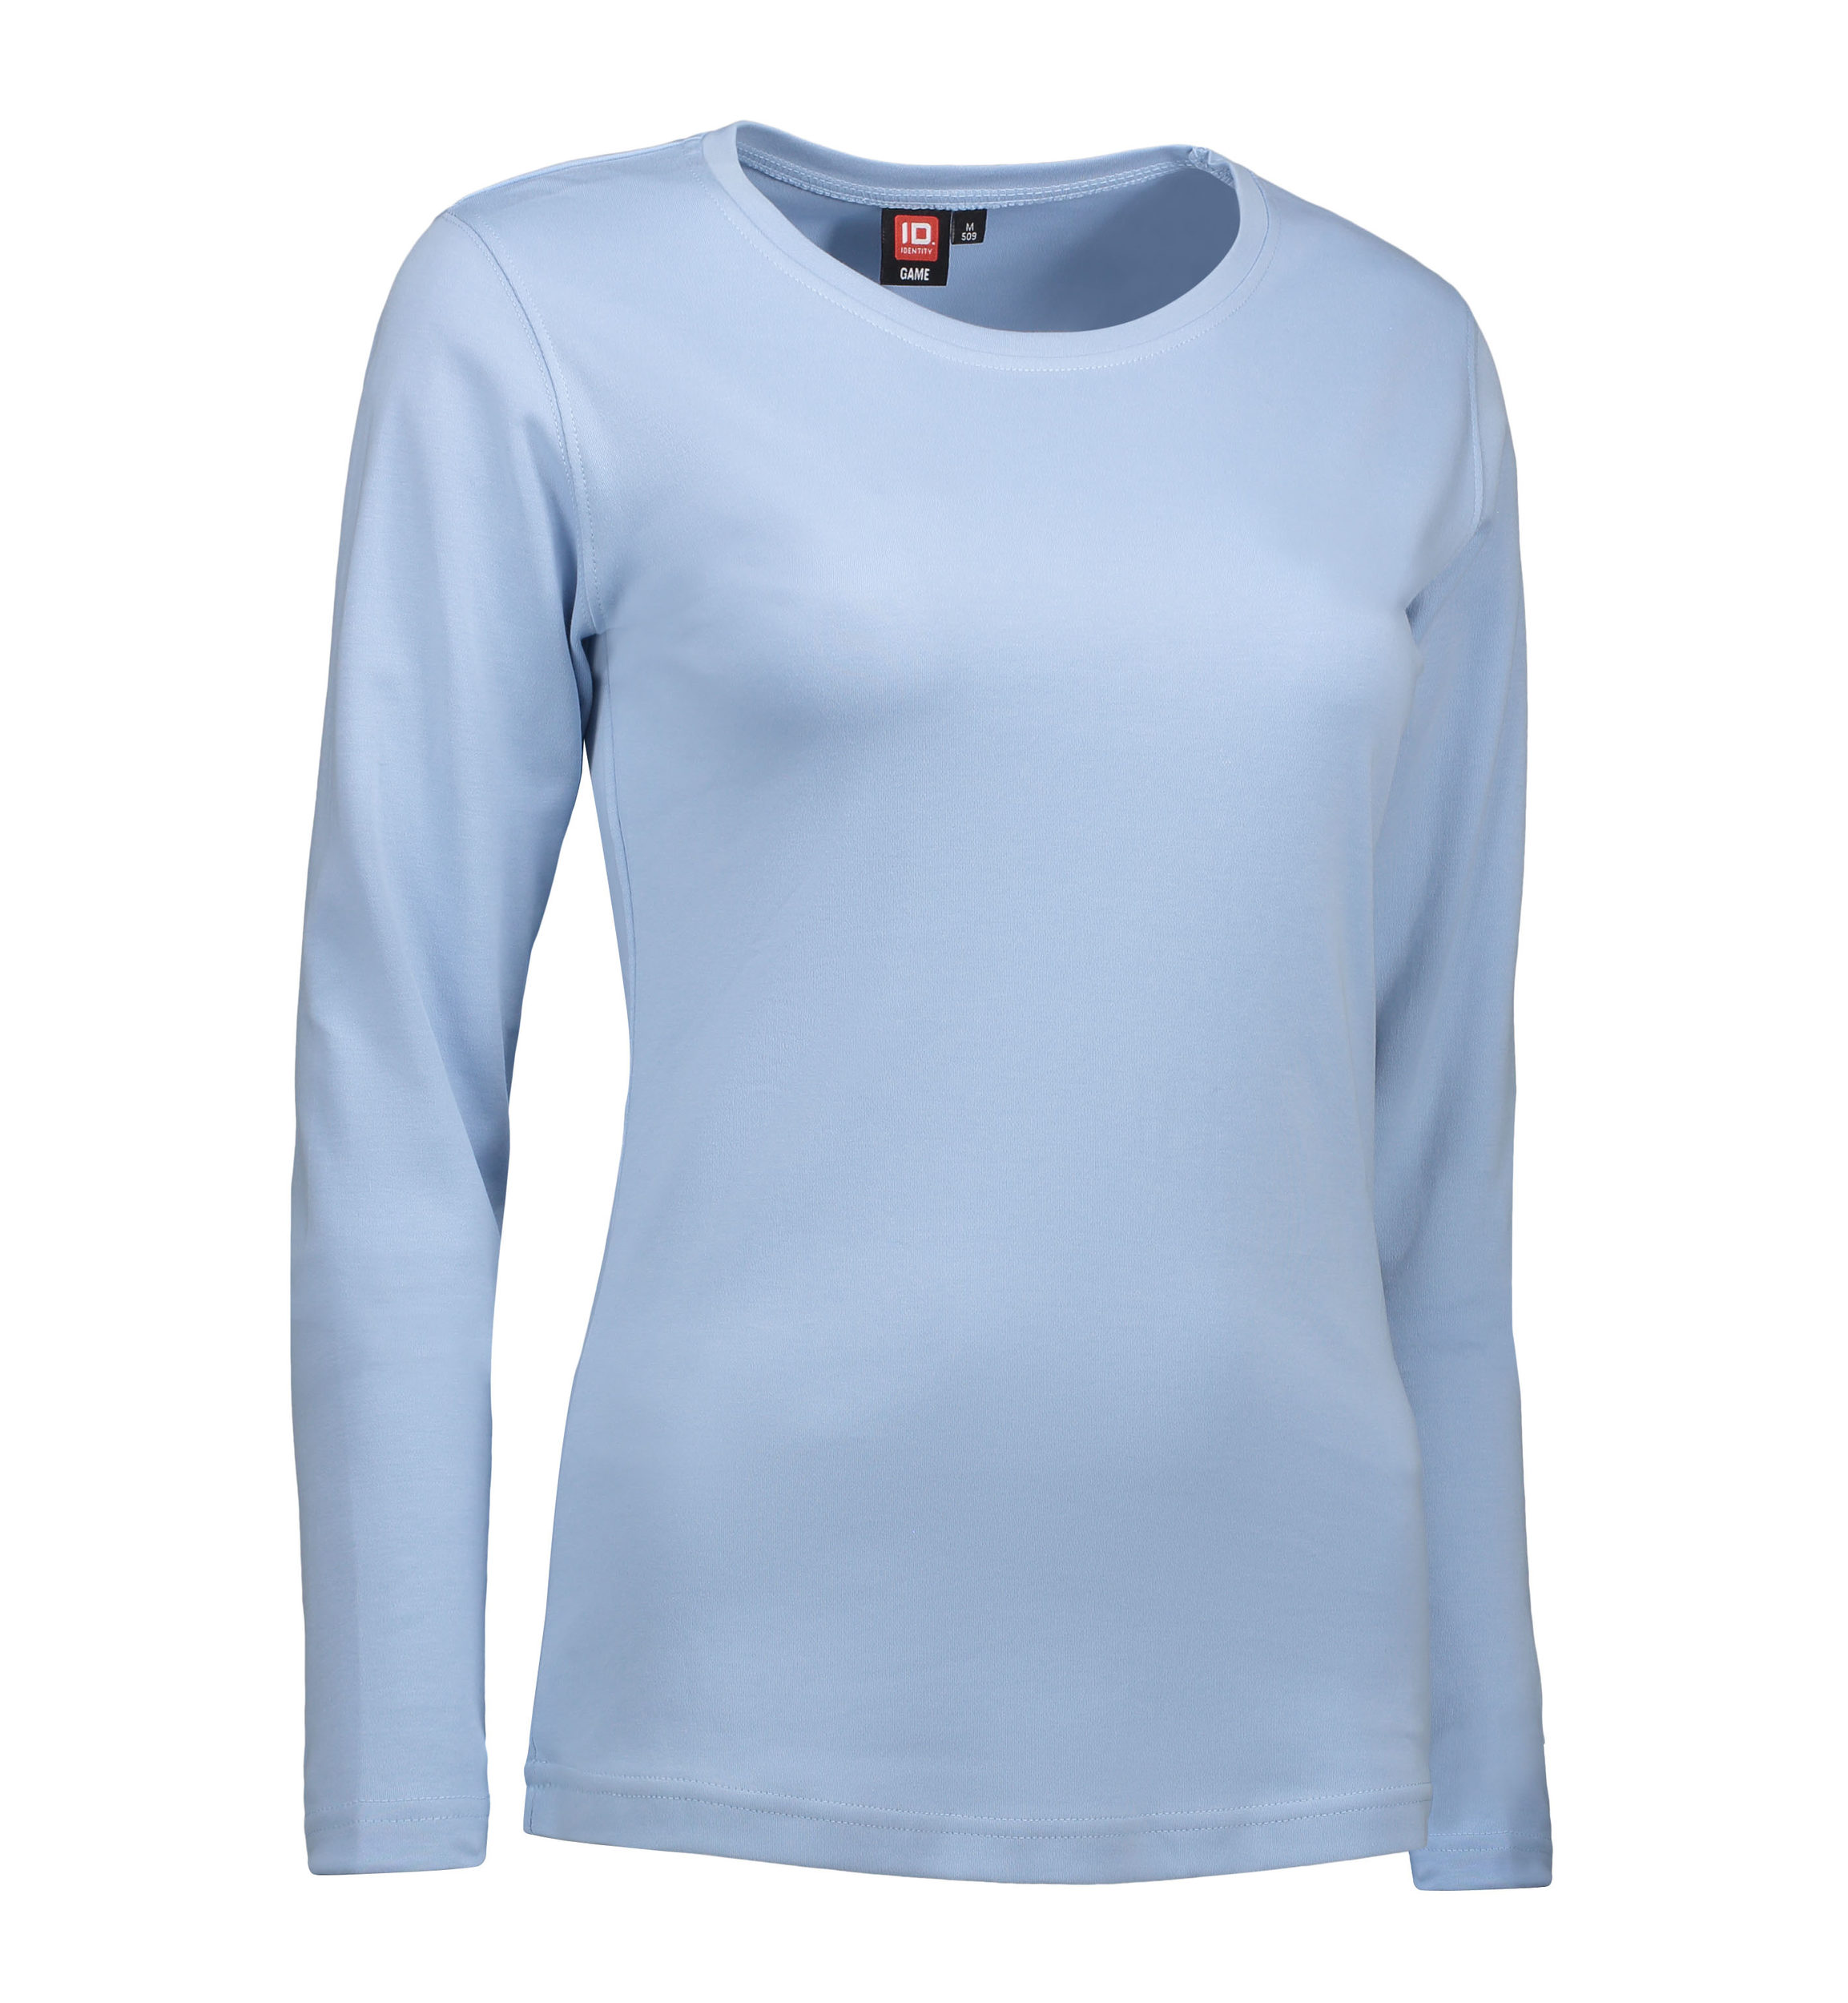 Billede af Langærmet dame t-shirt i lyseblå - 2XL hos Sygeplejebutikken.dk